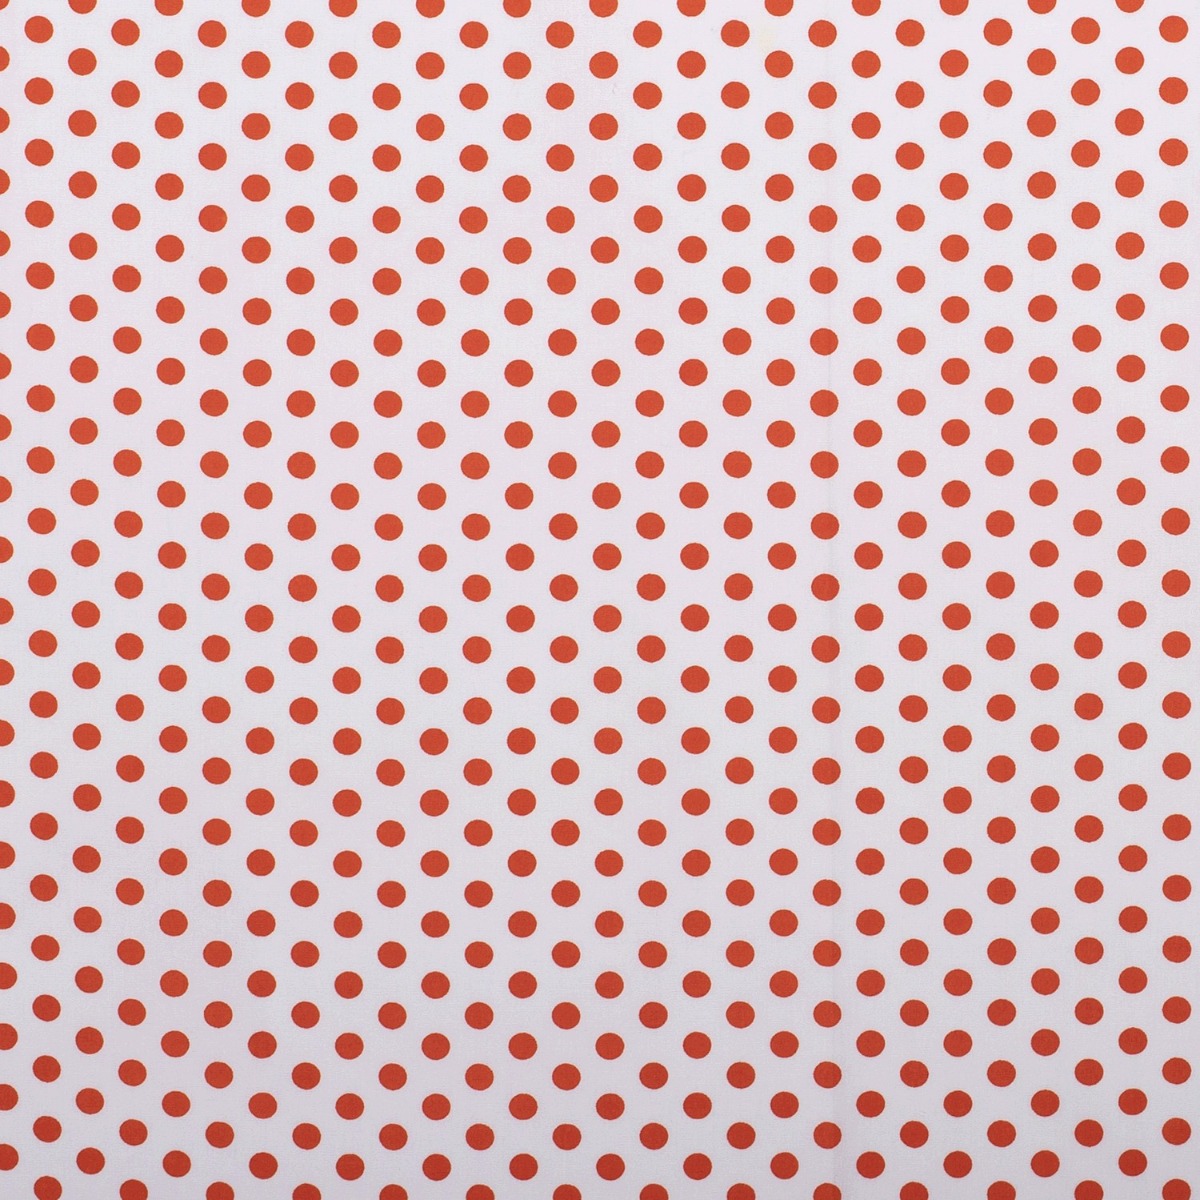 Baumwolle Punkte Standard Weiß/Orange